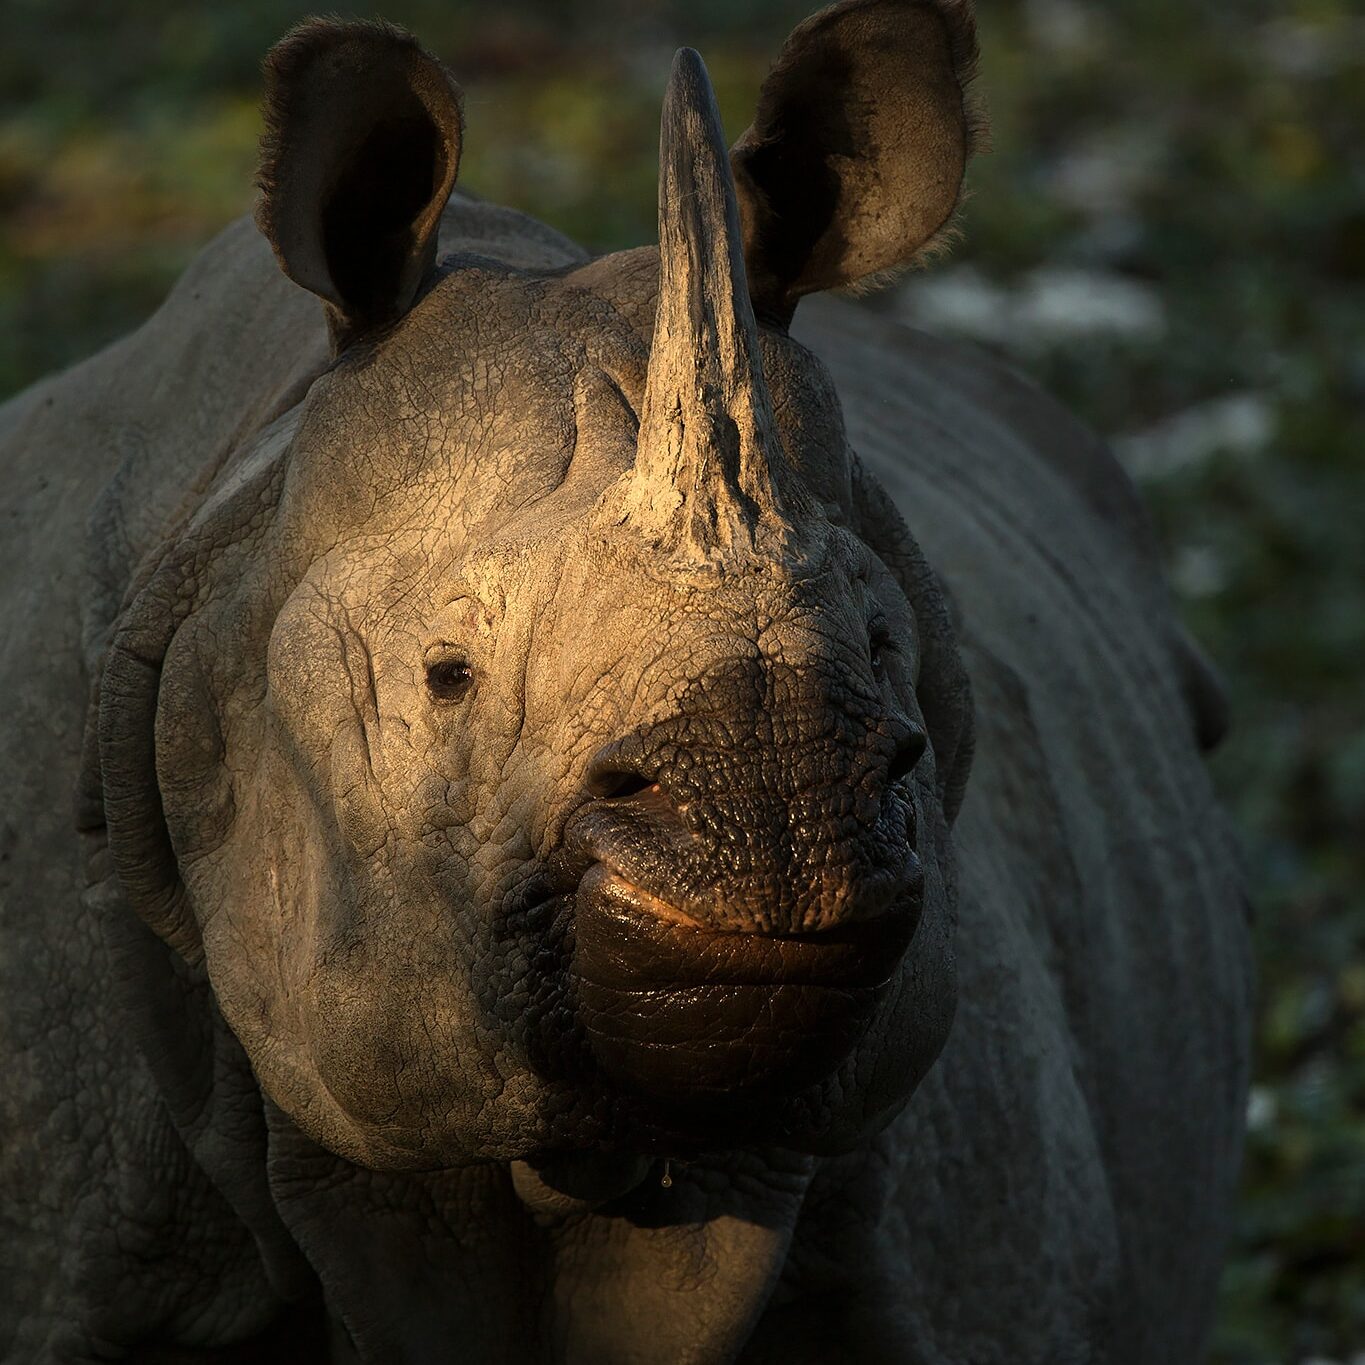 Rhino in Kaziranga on a Wildlife Photography Tour